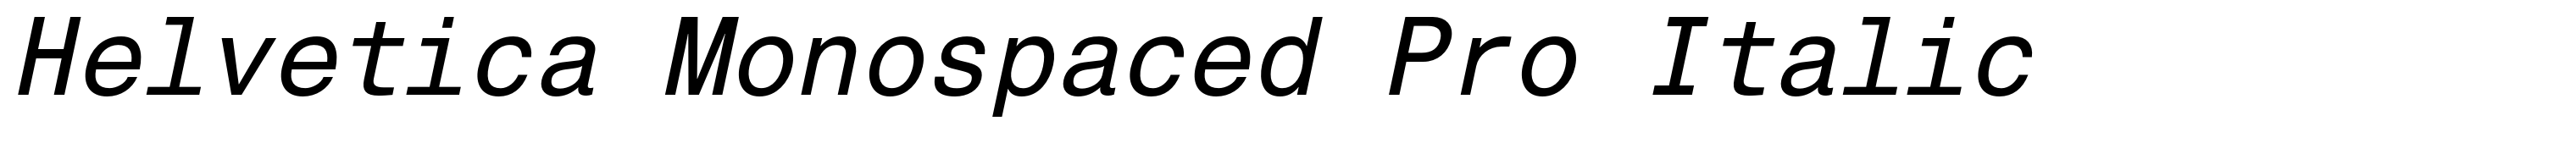 Helvetica Monospaced Pro Italic